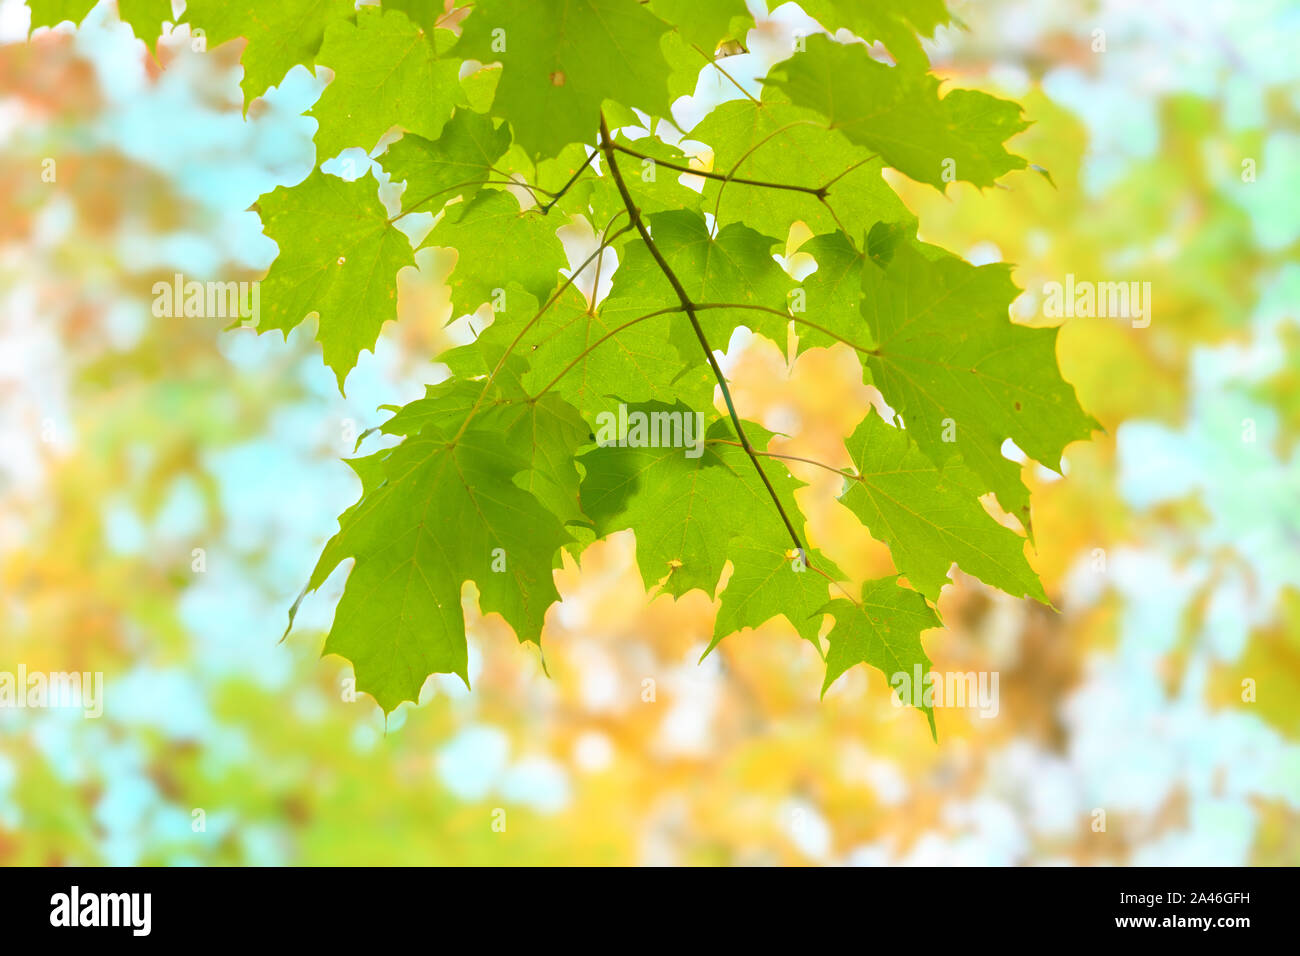 Mirando hojas de arce verde contra un dosel de follaje de otoño. Foto de stock